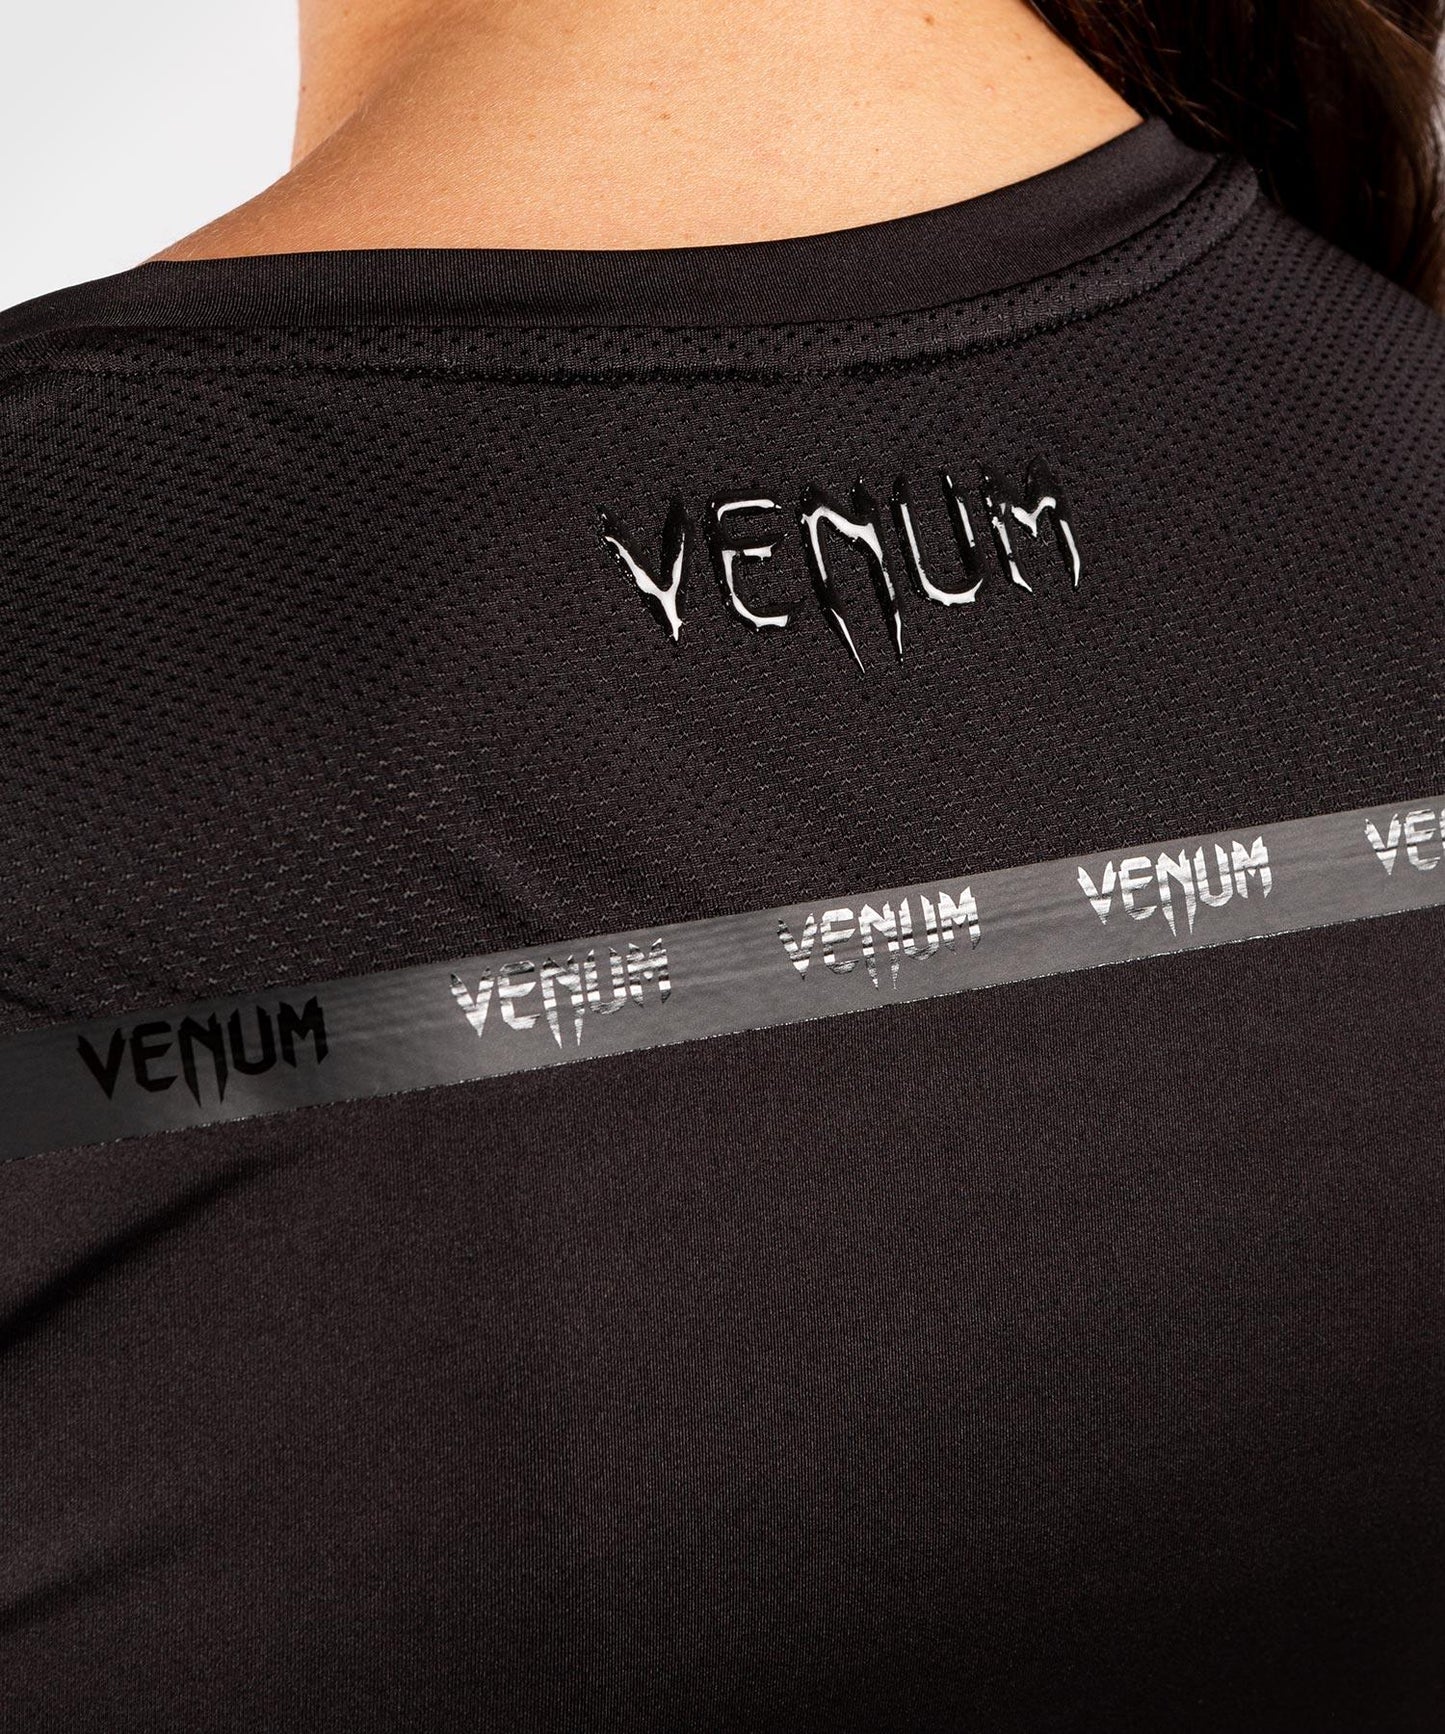 Venum G-Fit Dry-Tech T-shirt - For Women - Black/Black - Venum